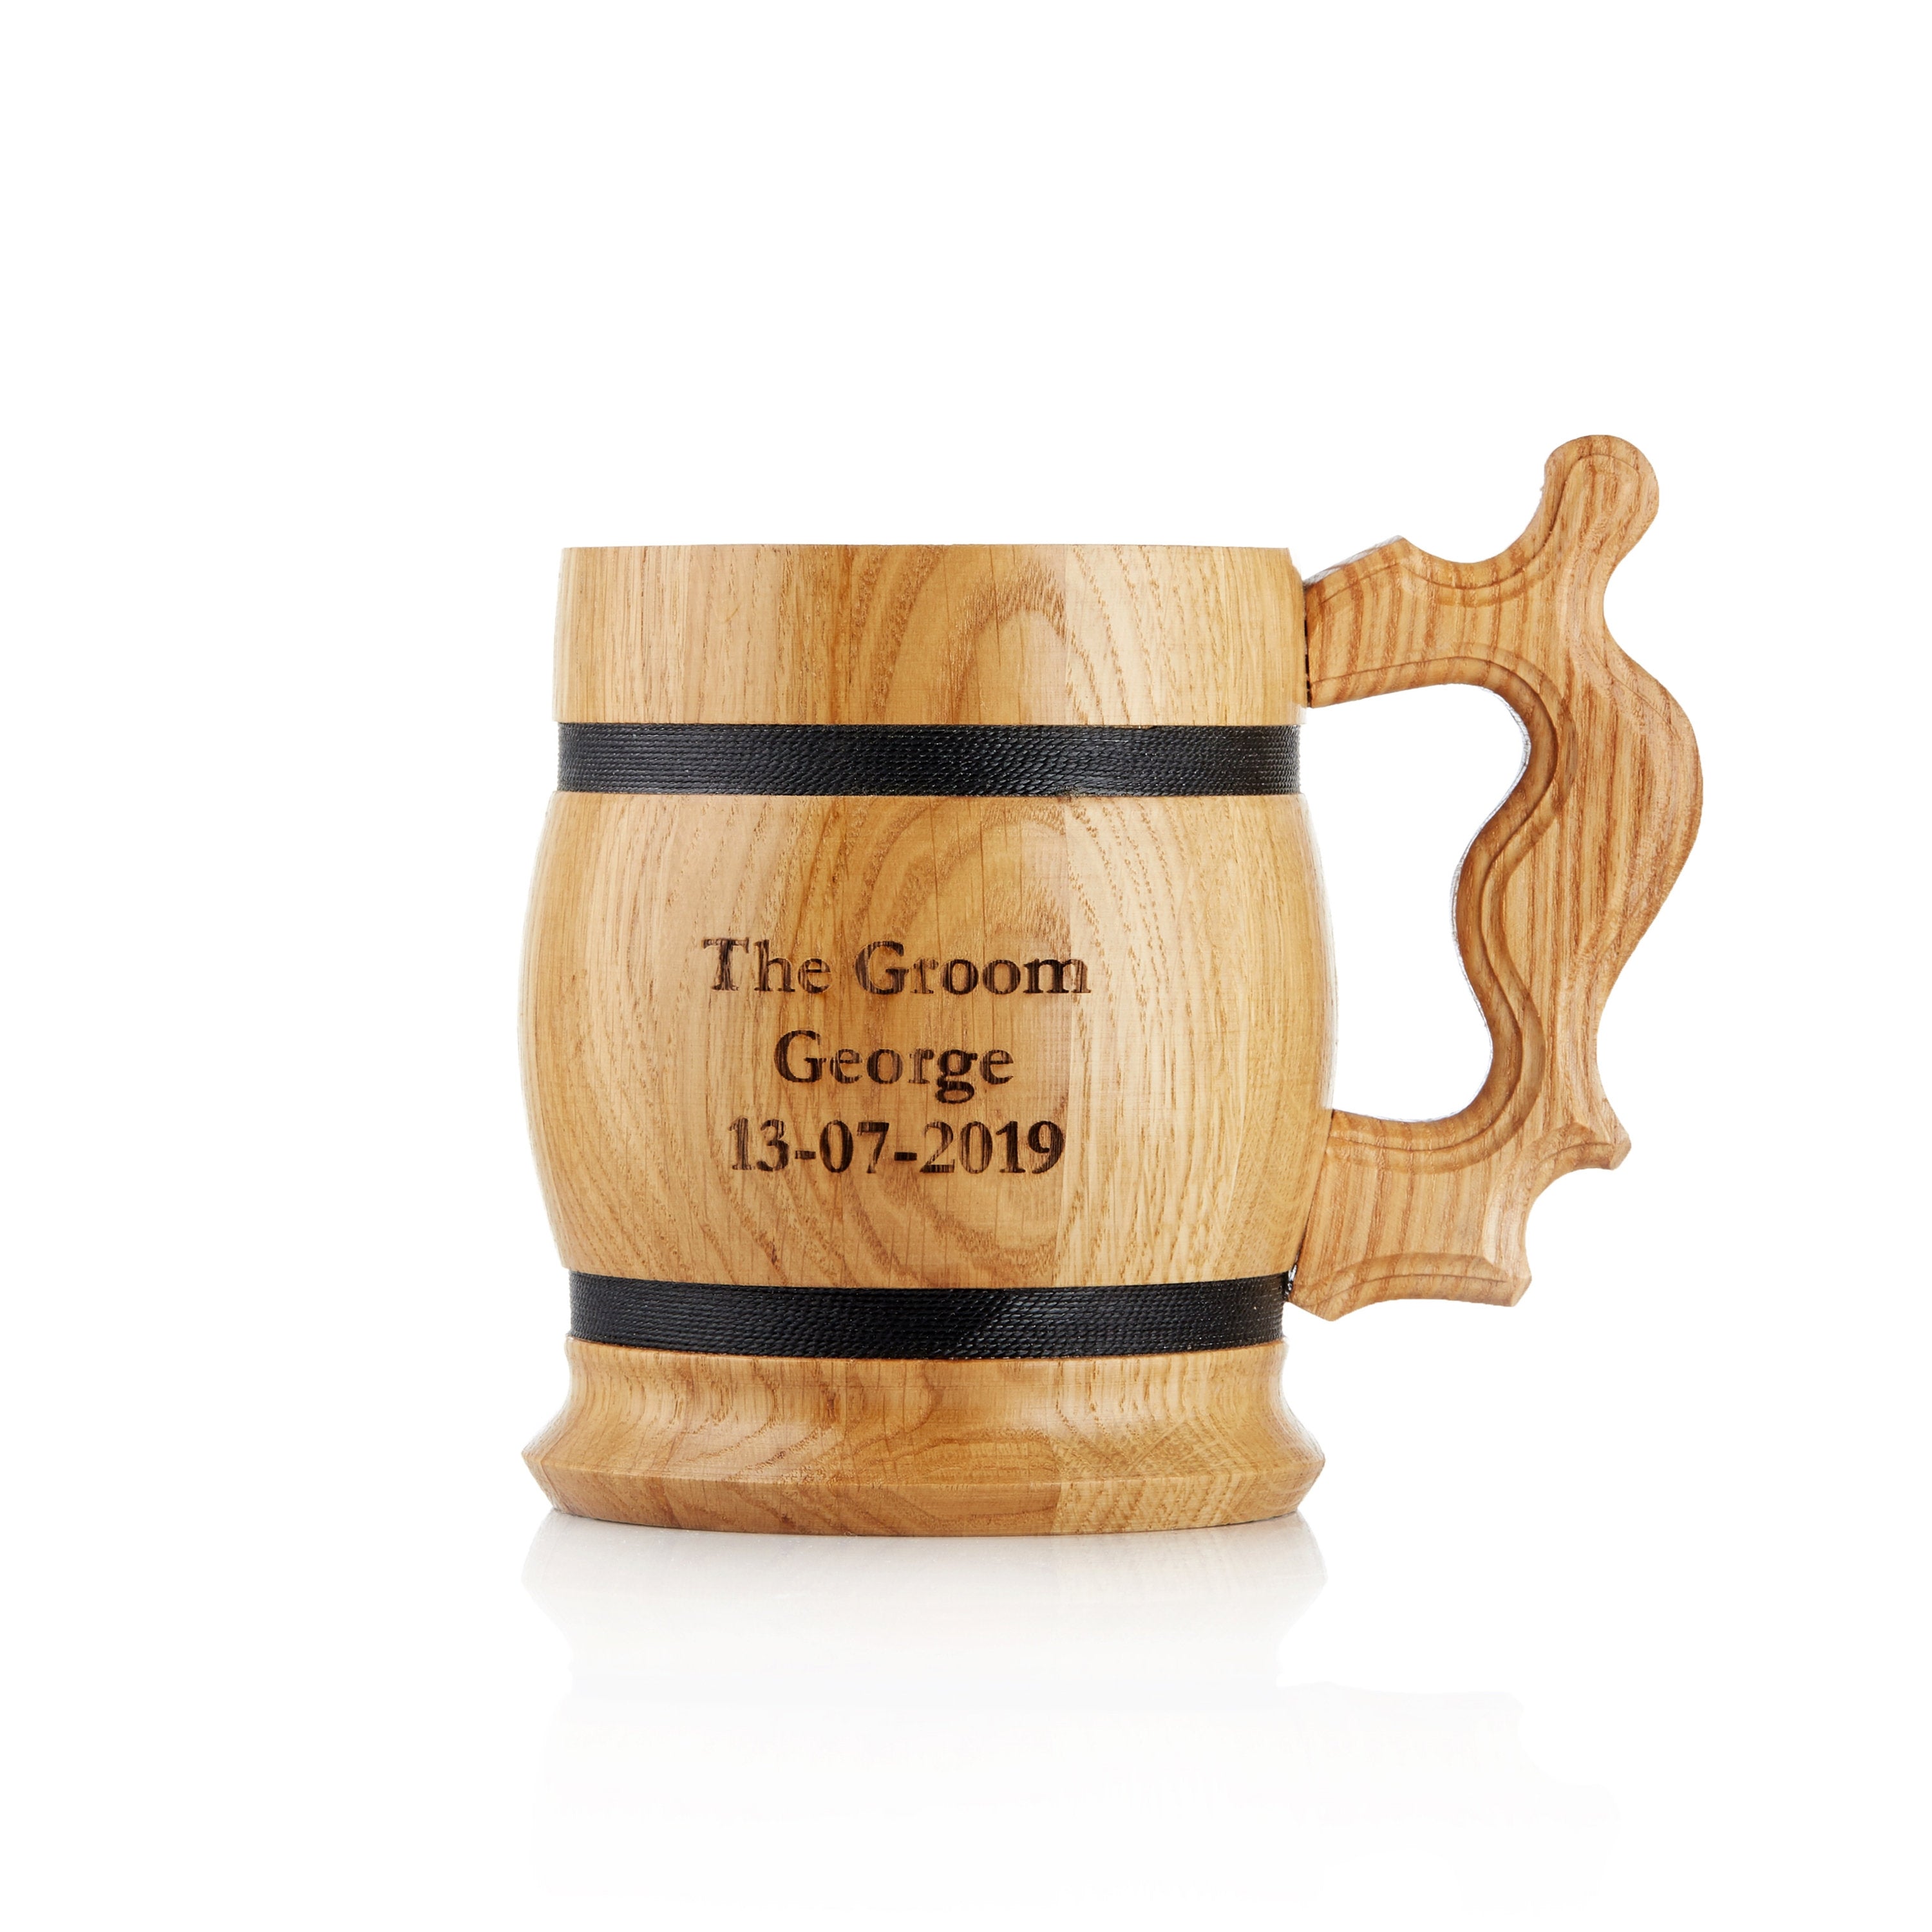 Personalised Handmade Wooden Beer Mug - Oak Wood Beer Stein Tankard - Gift For Craft Beer Enthusiasts - Laser Engraved